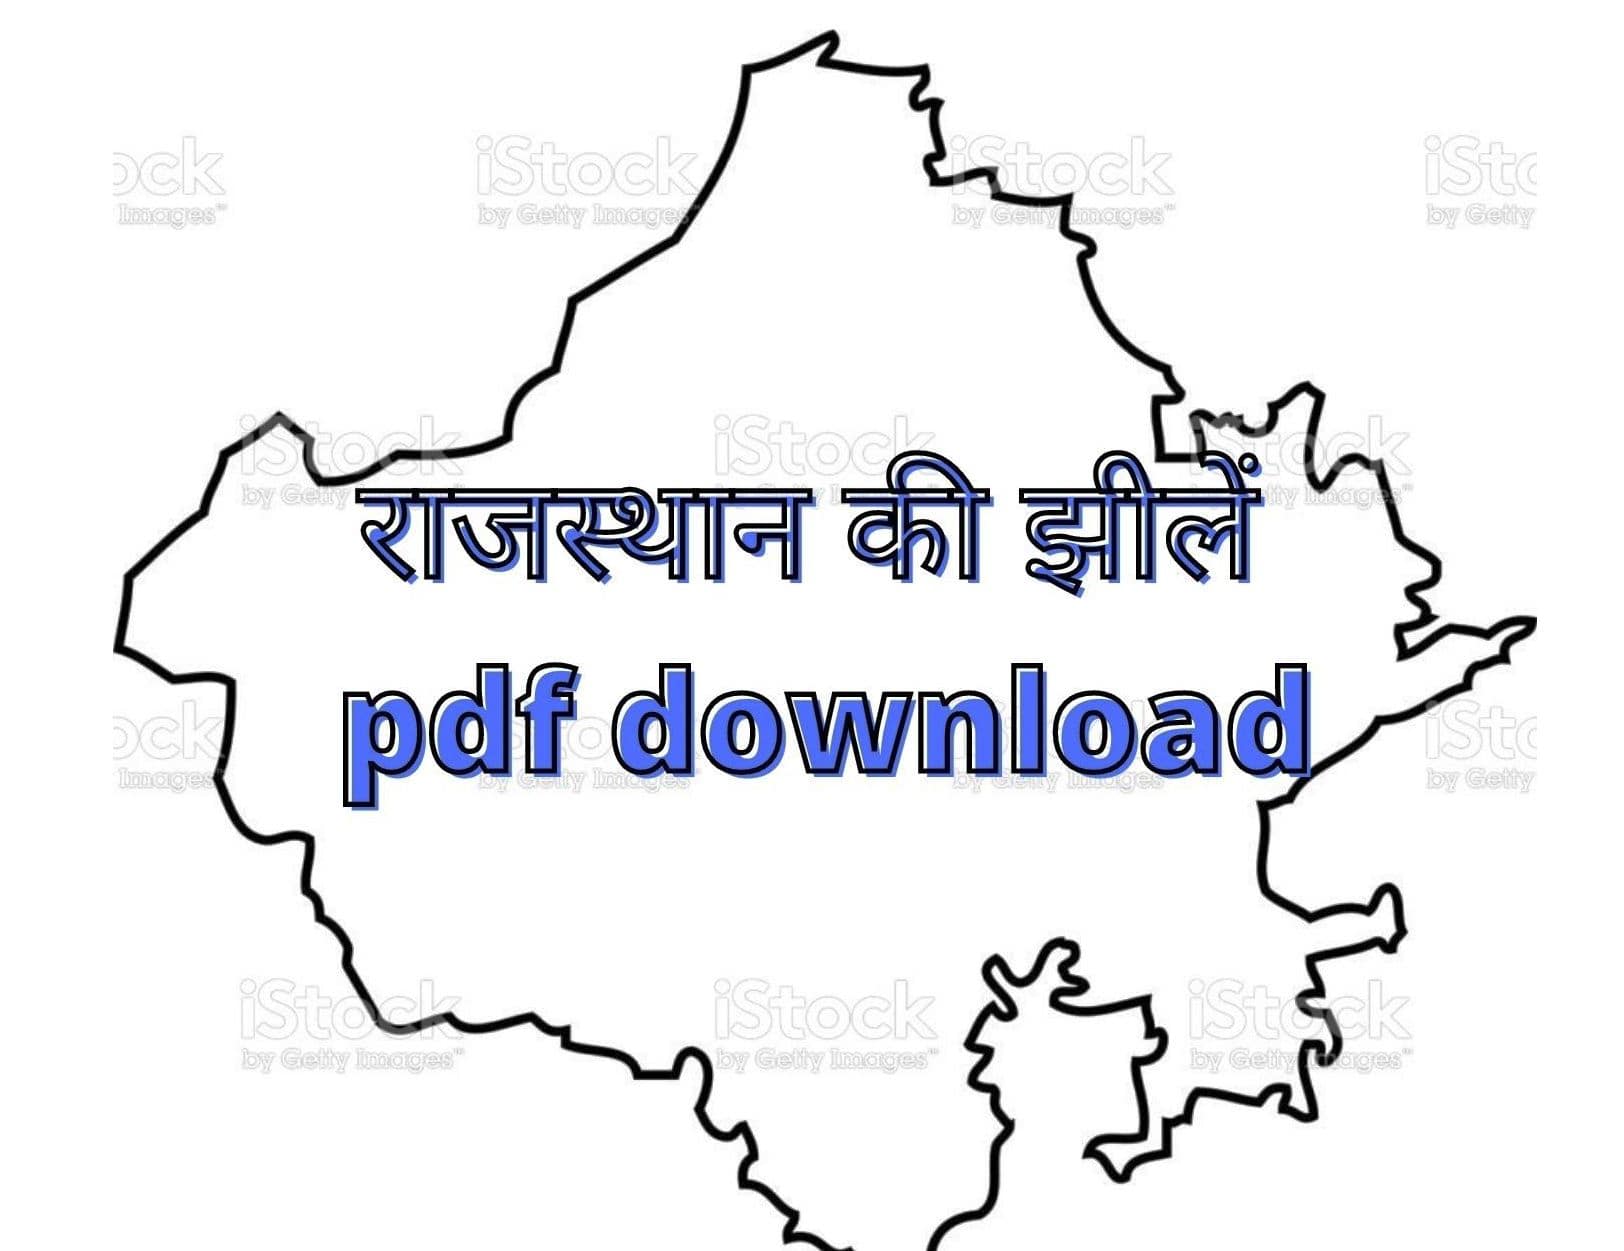 राजस्थान की झीलें pdf download